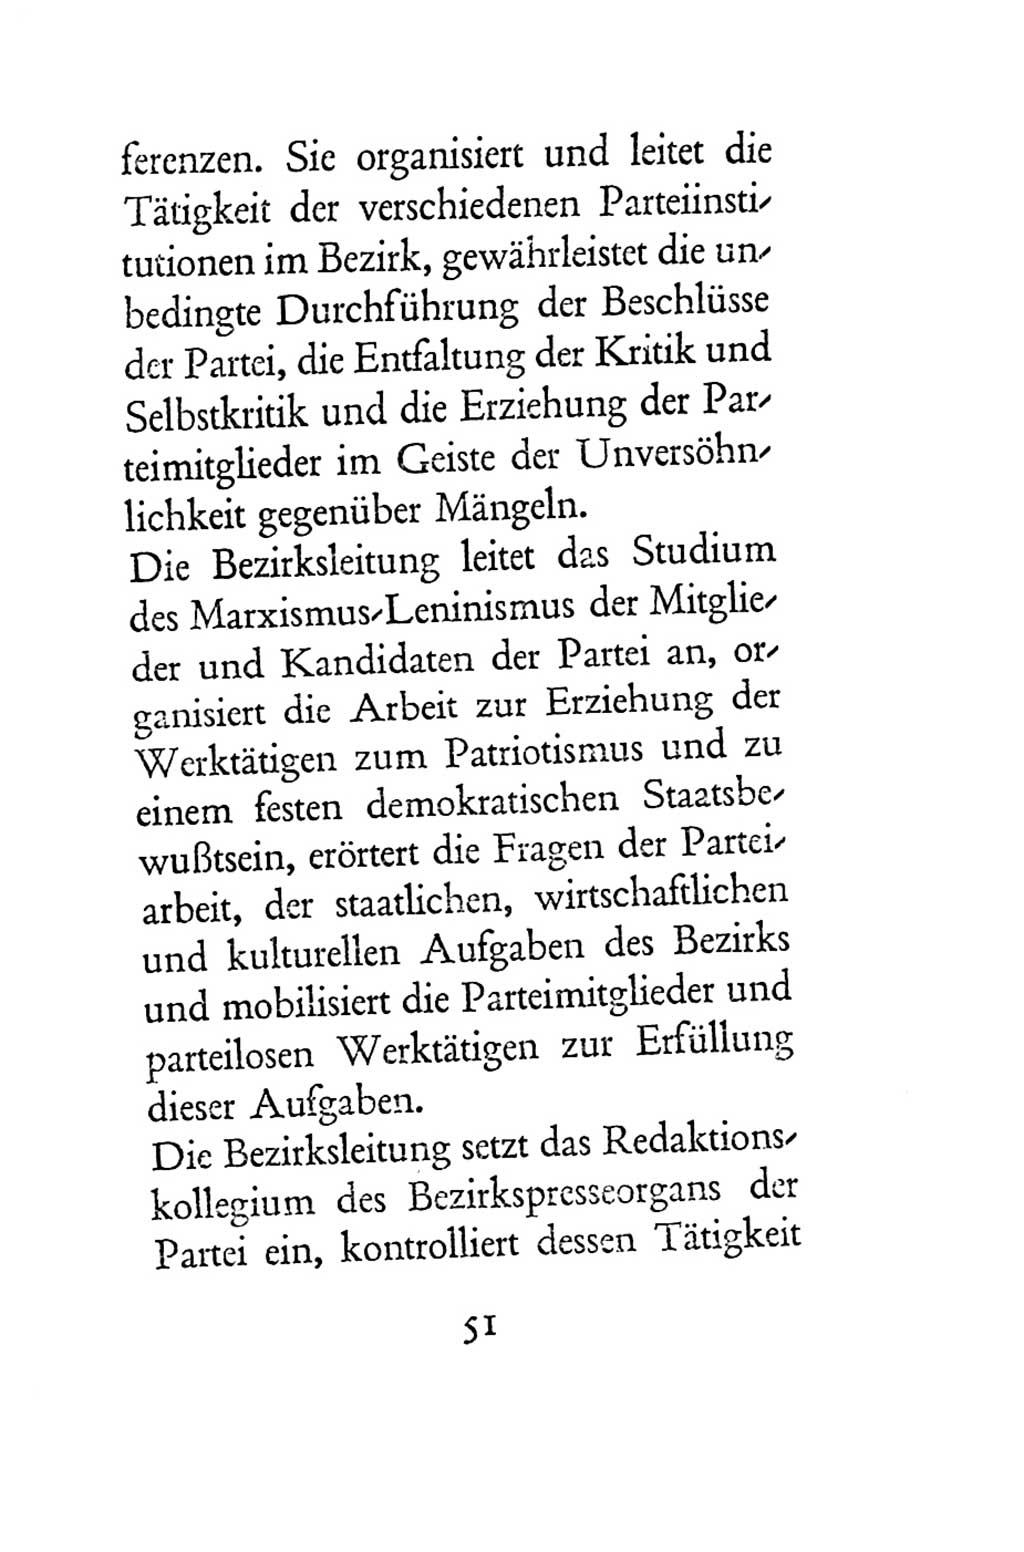 Statut der Sozialistischen Einheitspartei Deutschlands (SED) 1954, Seite 51